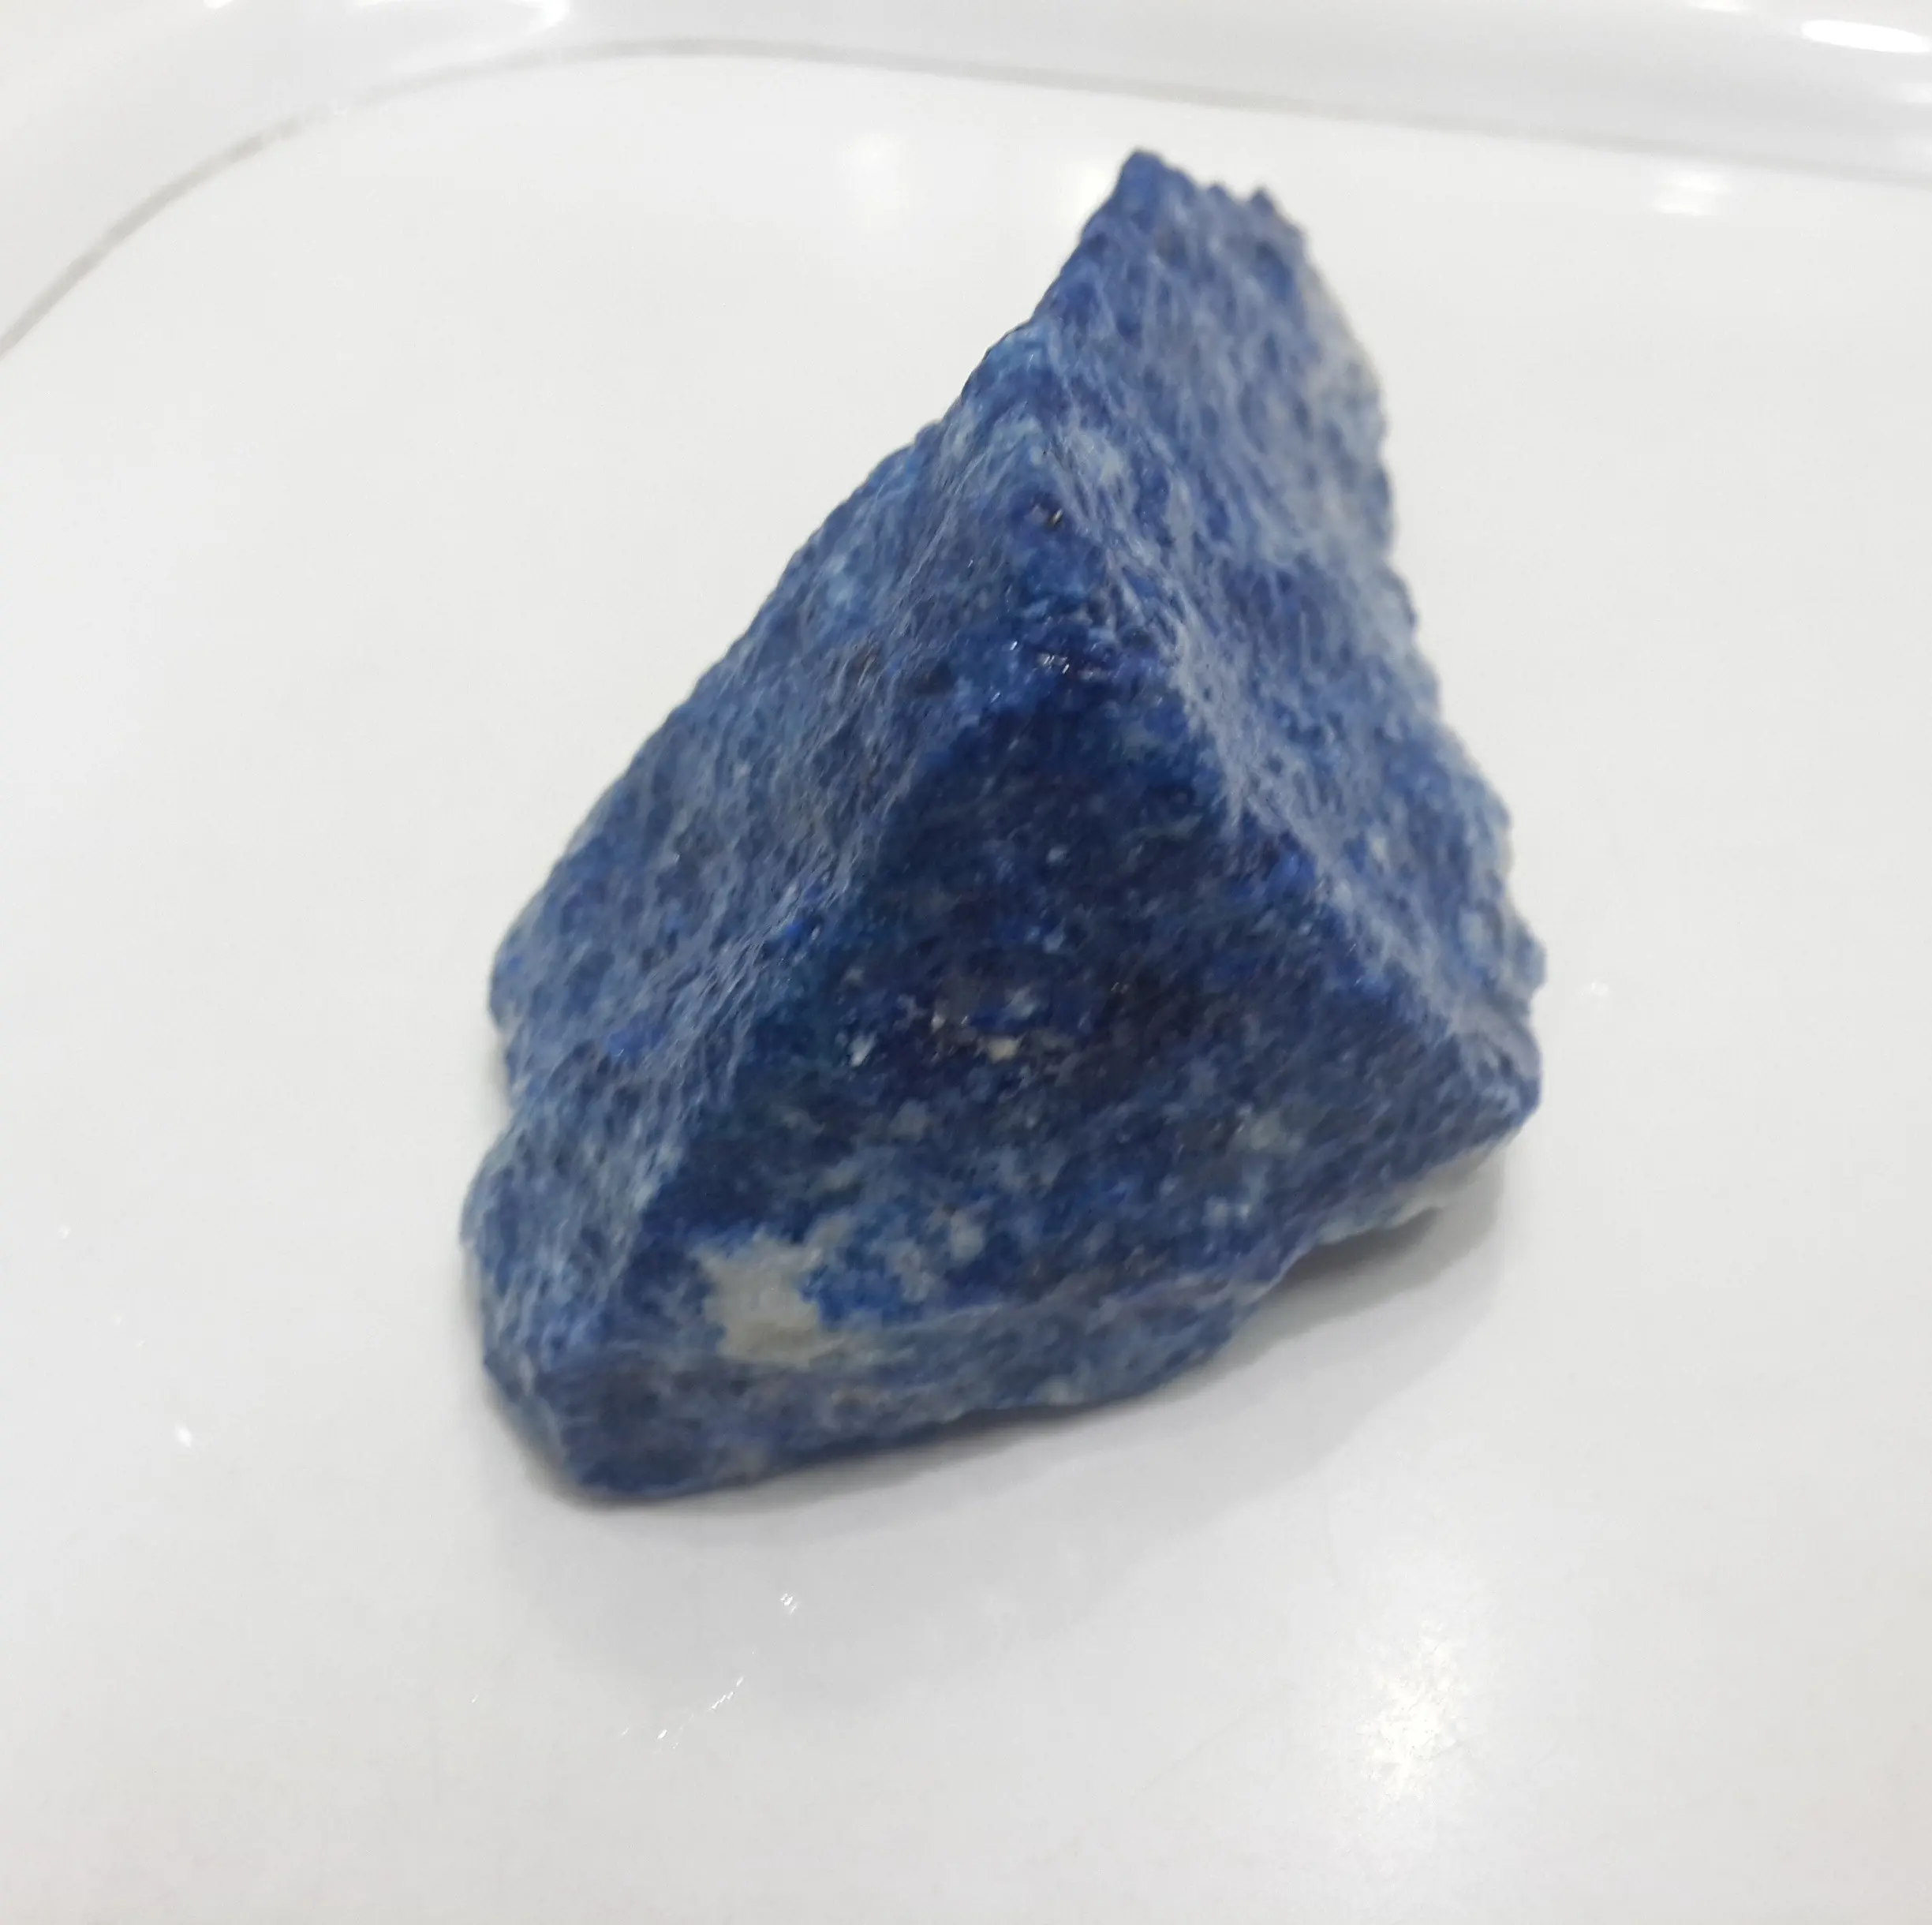 Натуральный грубый драгоценный камень из афганской лазурита с редкой Золотой матрицей, непрозрачного синего цвета, хорошее качество